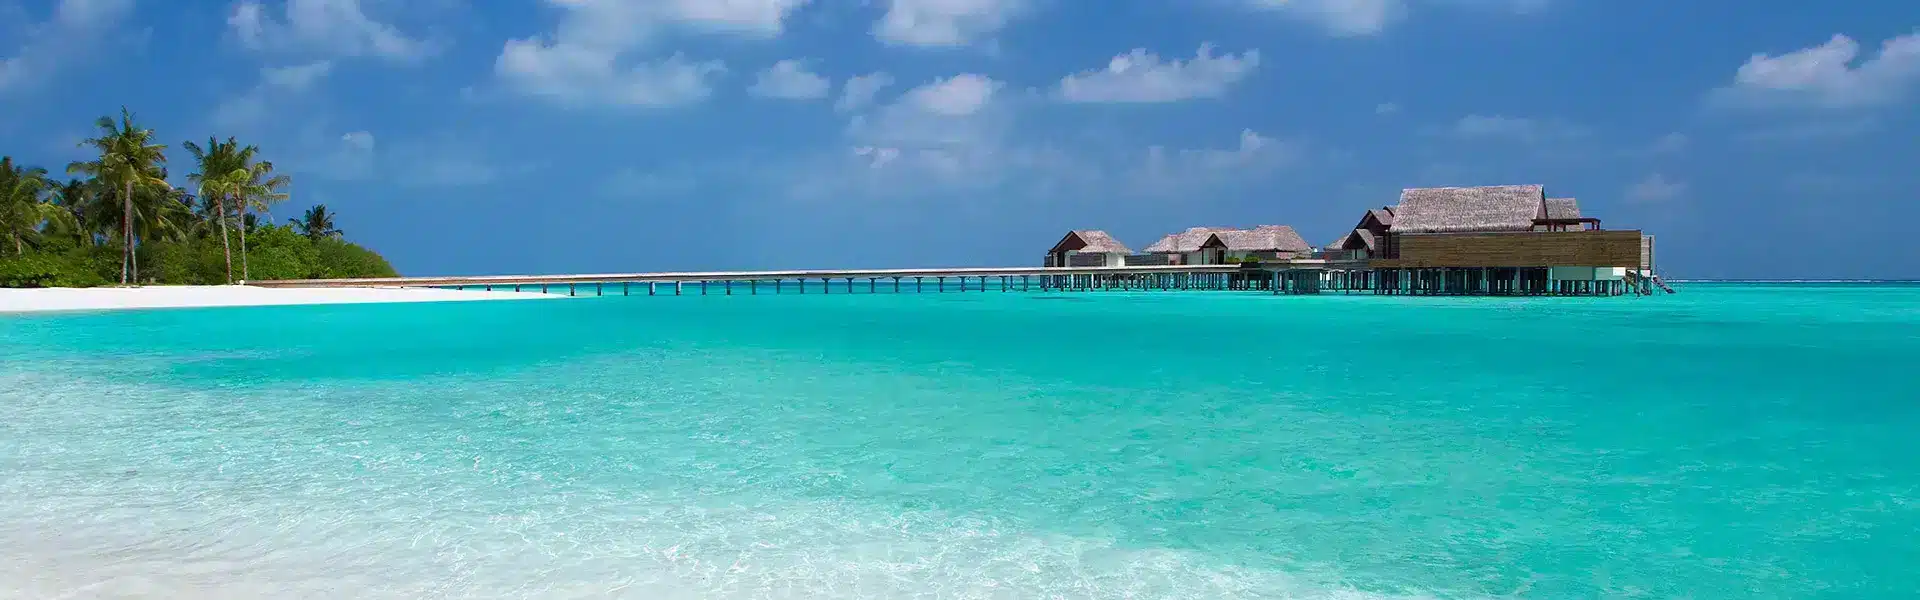 tourlider-Background-maldives-online